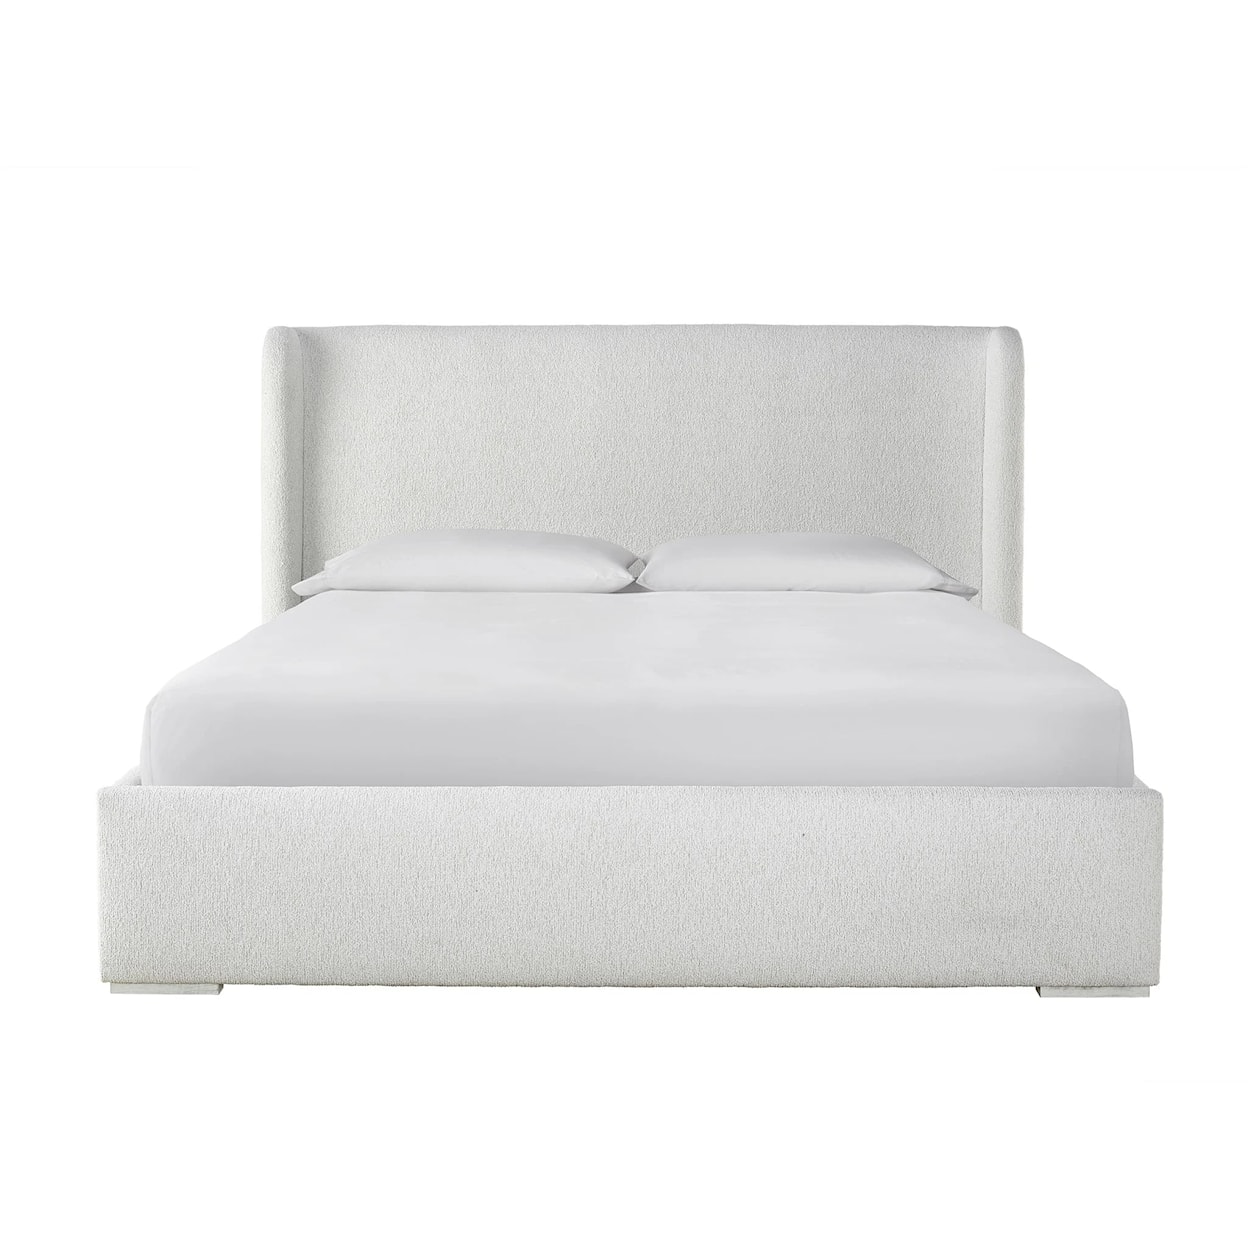 Universal Special Order Queen Restore Bed